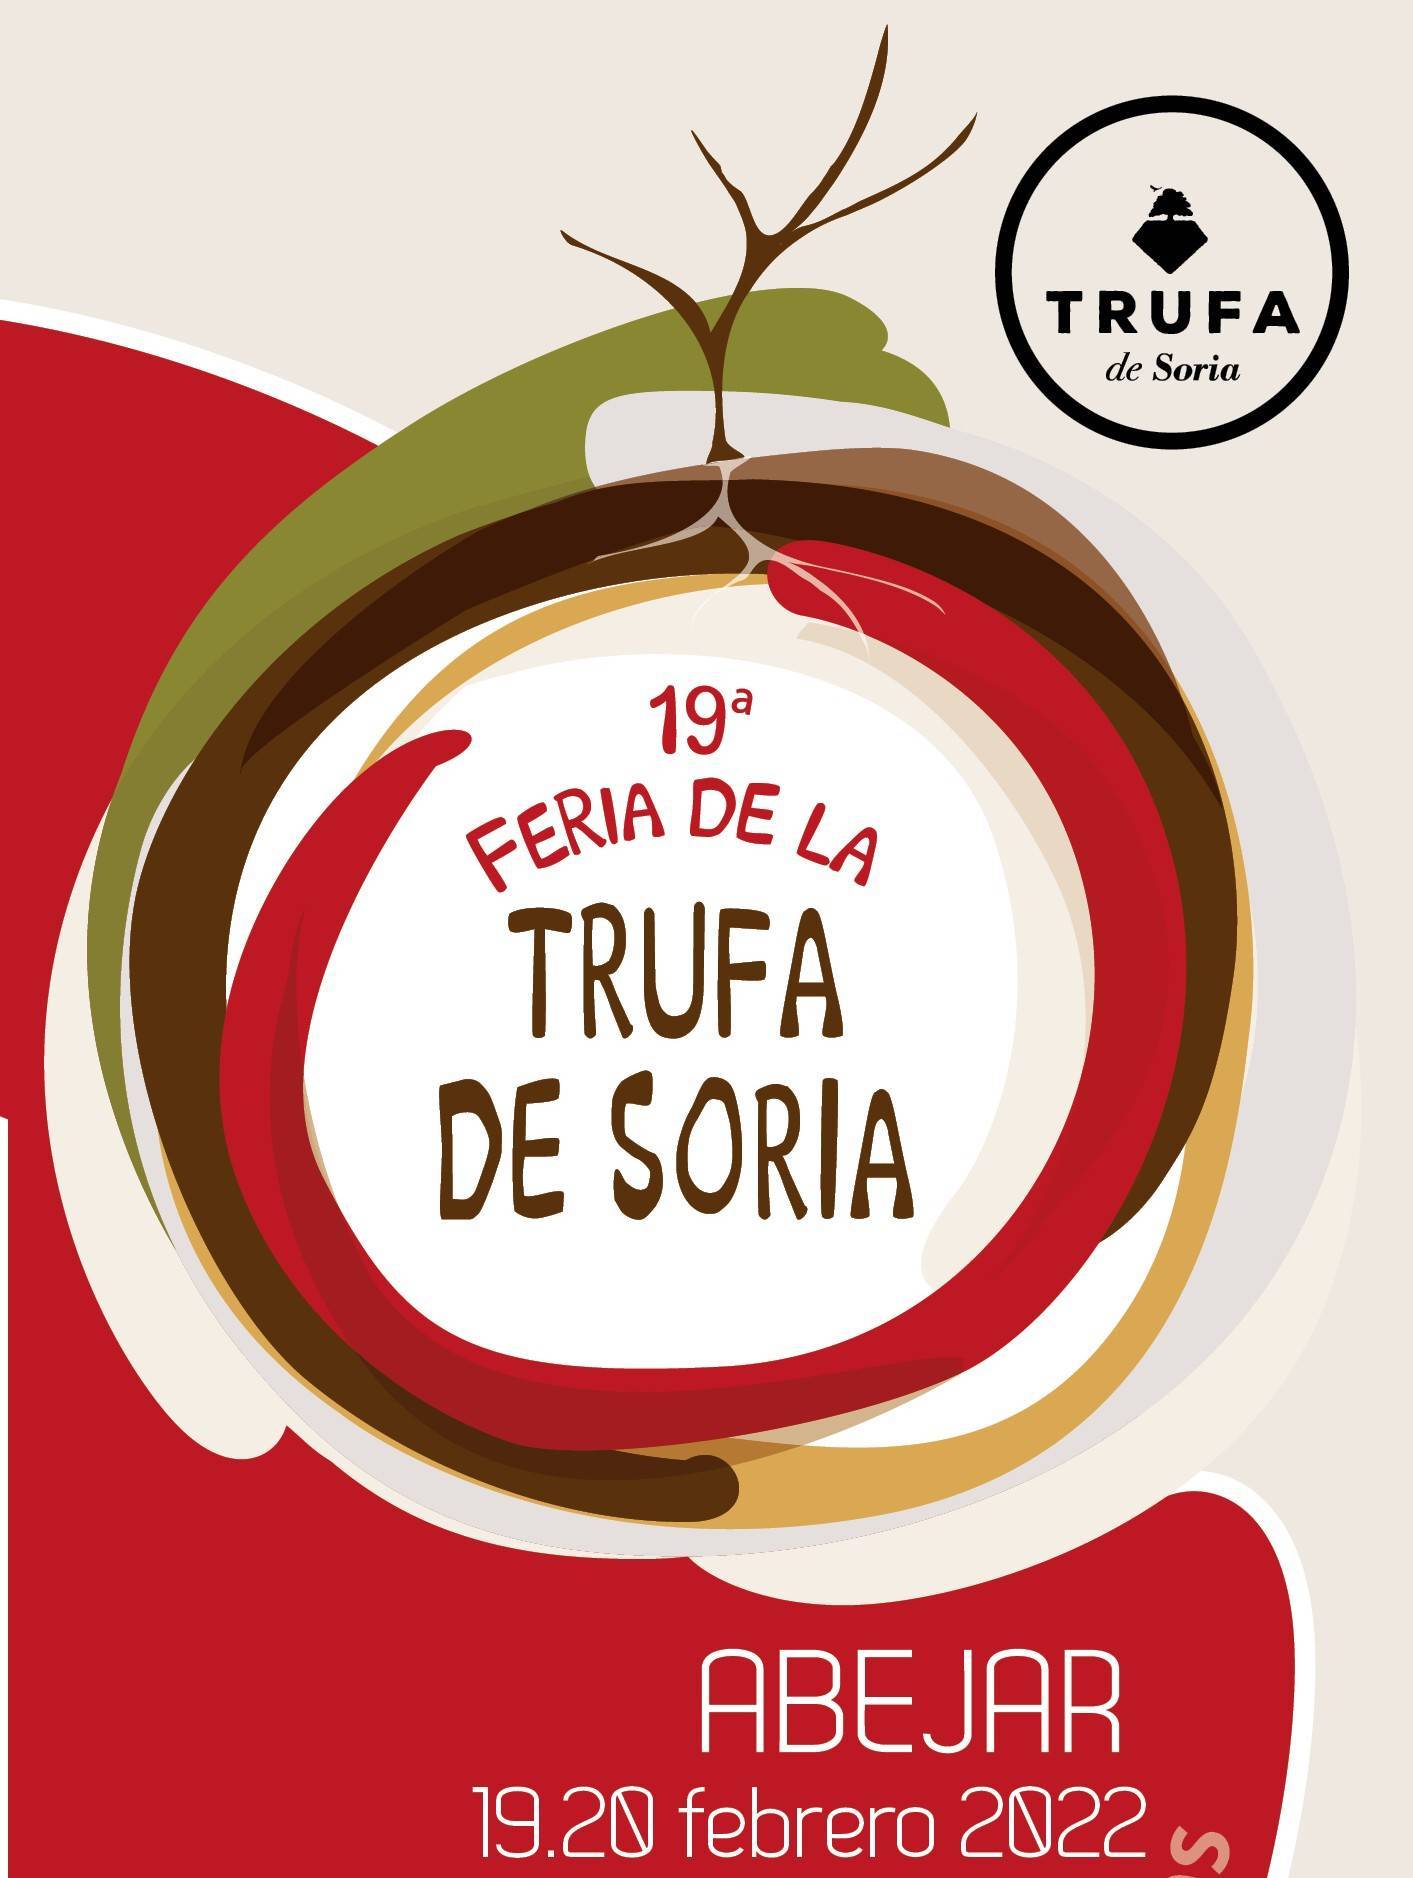 19ª Feria de la Trufa de Soria - Abejar (Soria) 1